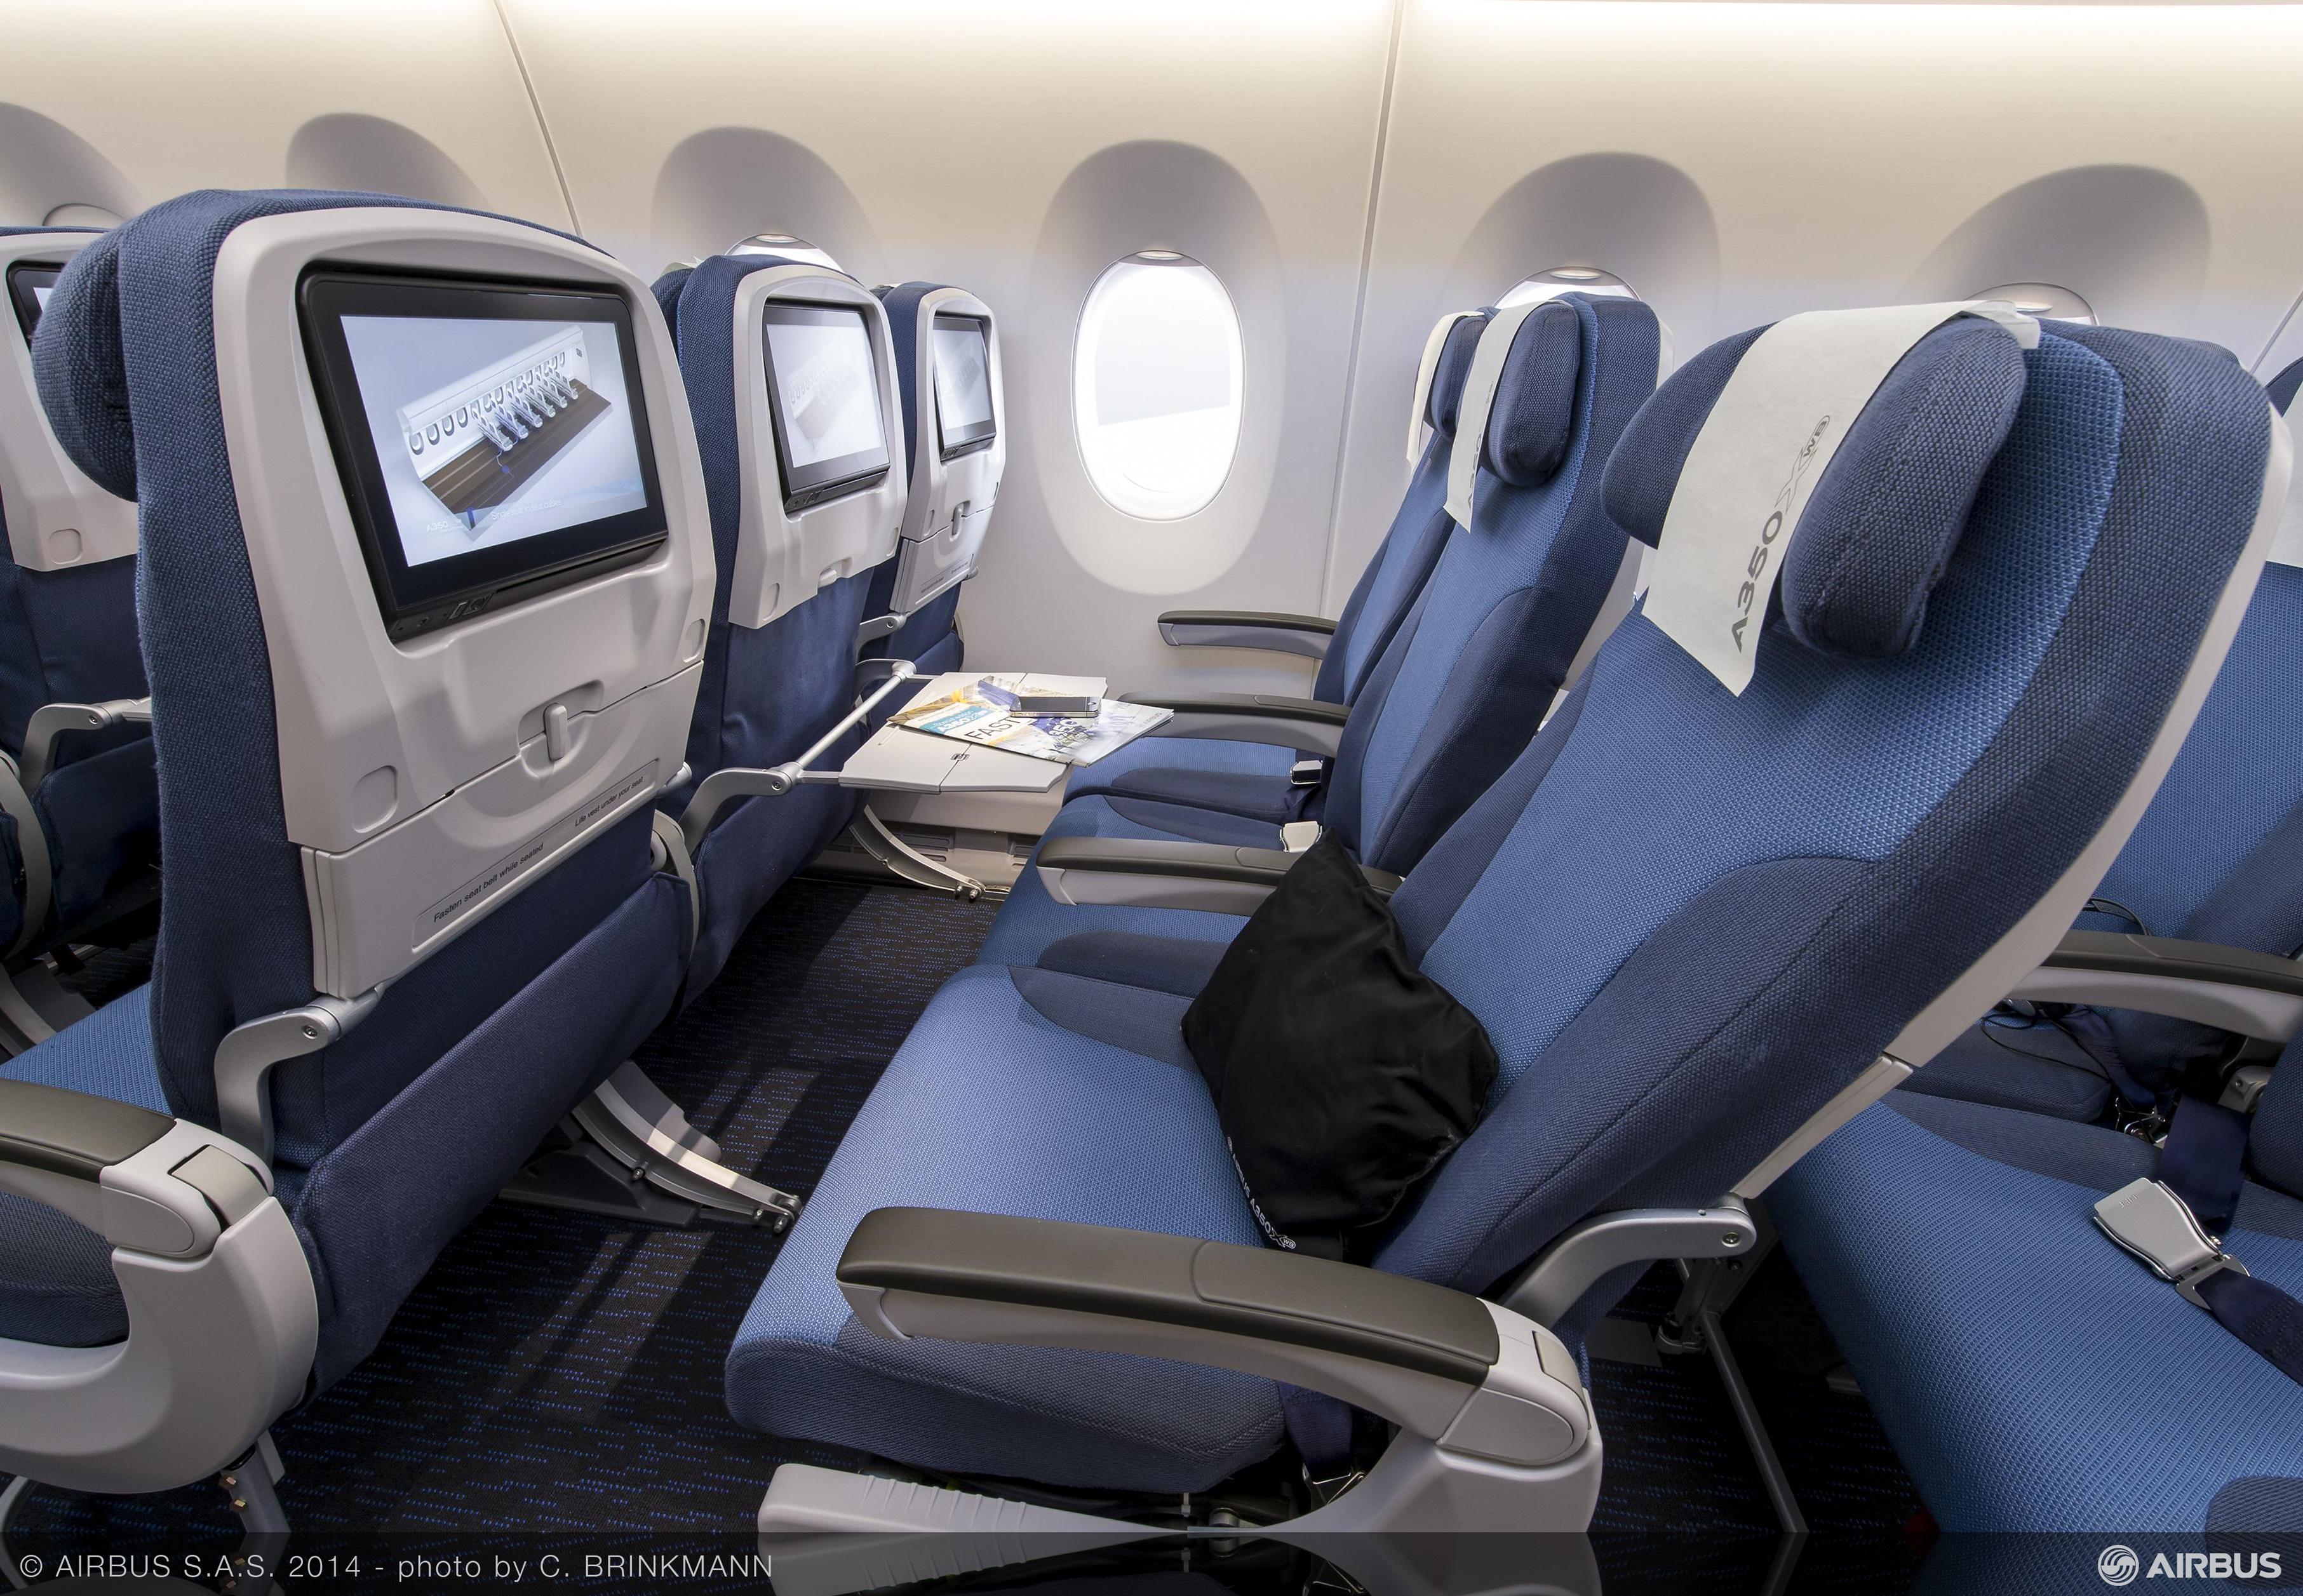 Photos: Airbus reveals A350 XWB cabin interiors - Bangalore Aviation